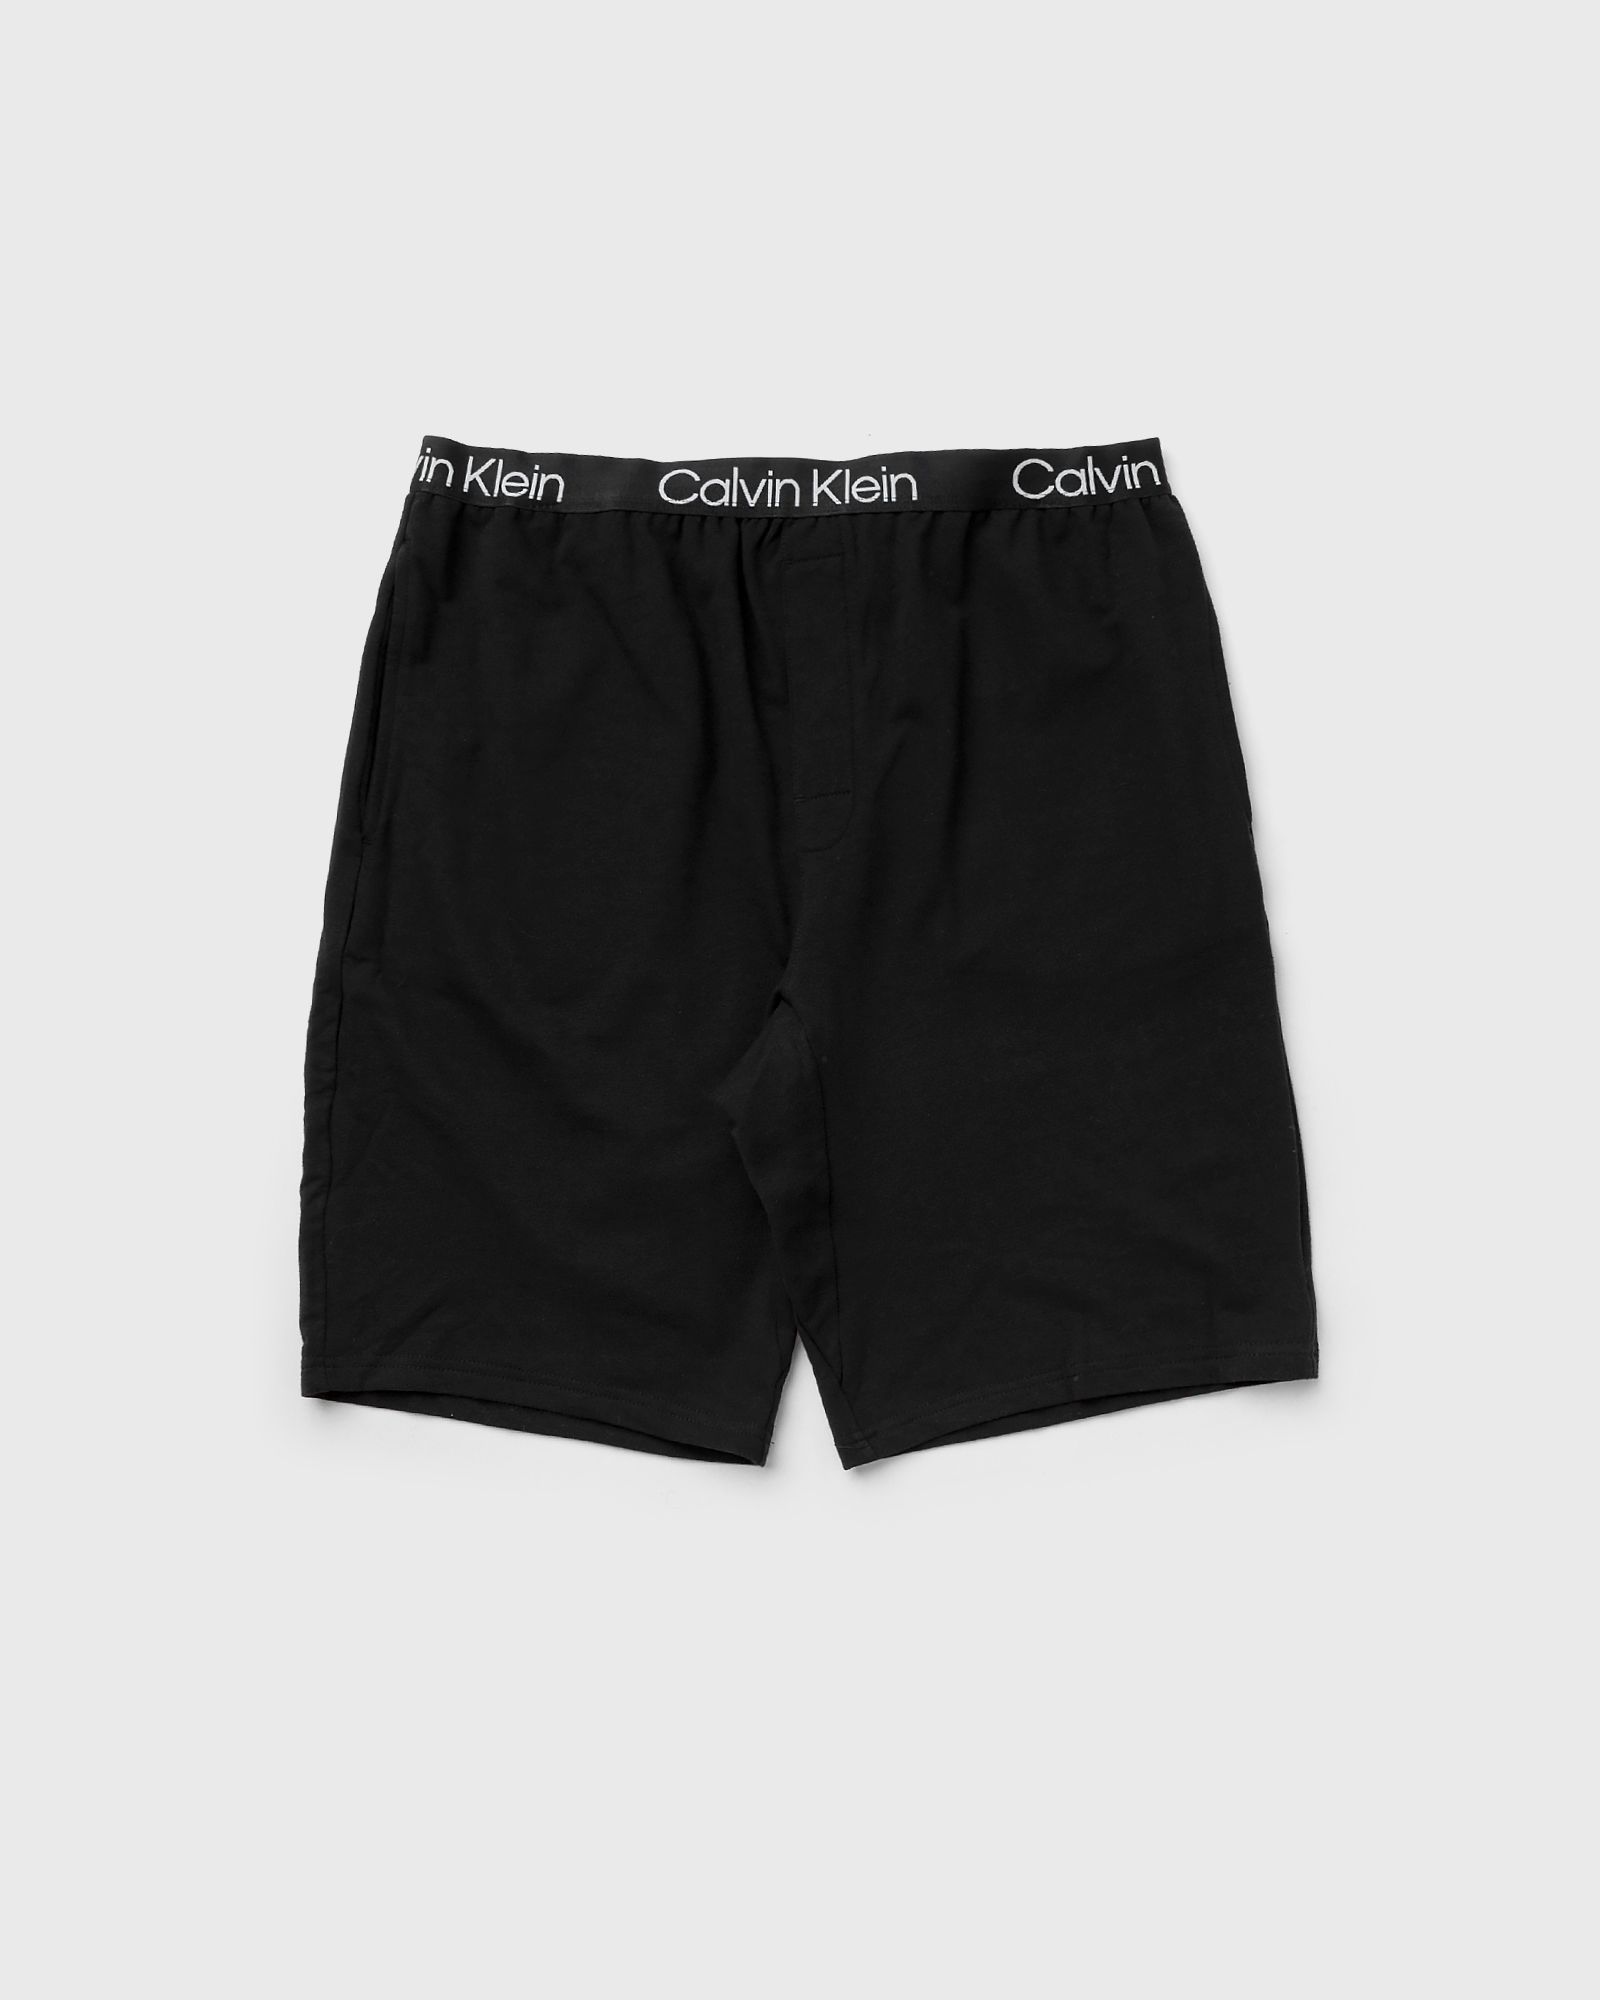 Calvin Klein Underwear MODERN STRUCTURE SLEEP SHORT men Sleep- & Loungewear black in Größe:S von Calvin Klein Underwear